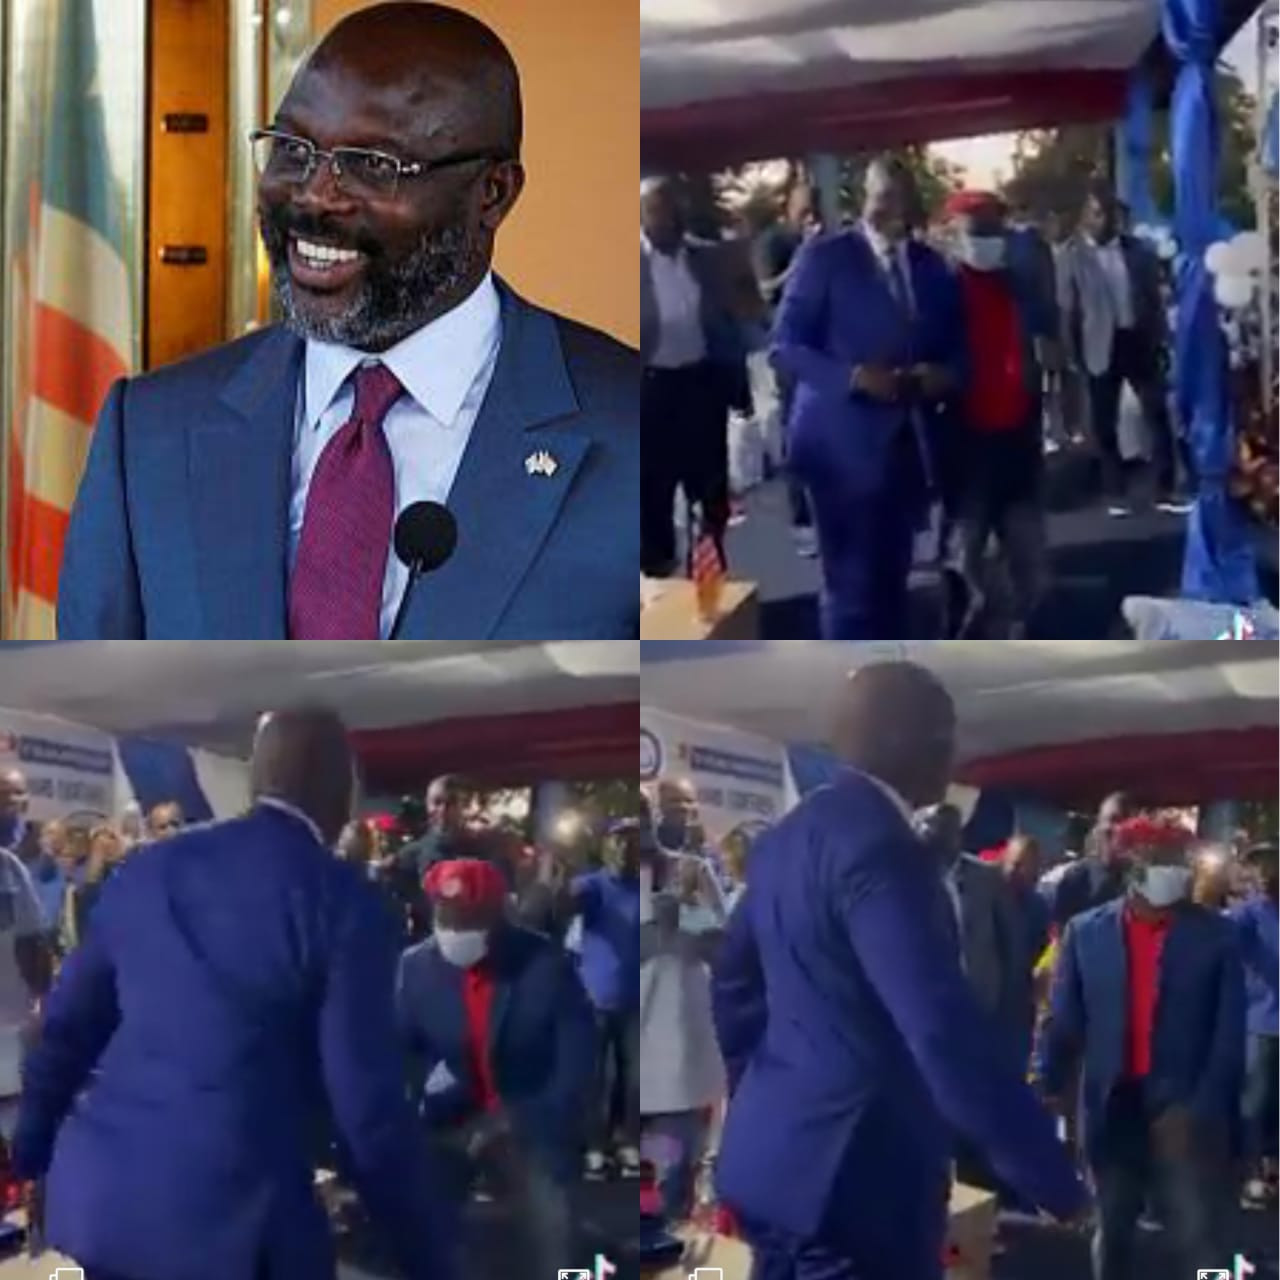 Heartwarming video of Liberian President, George Weah, participating in Kizz Daniel